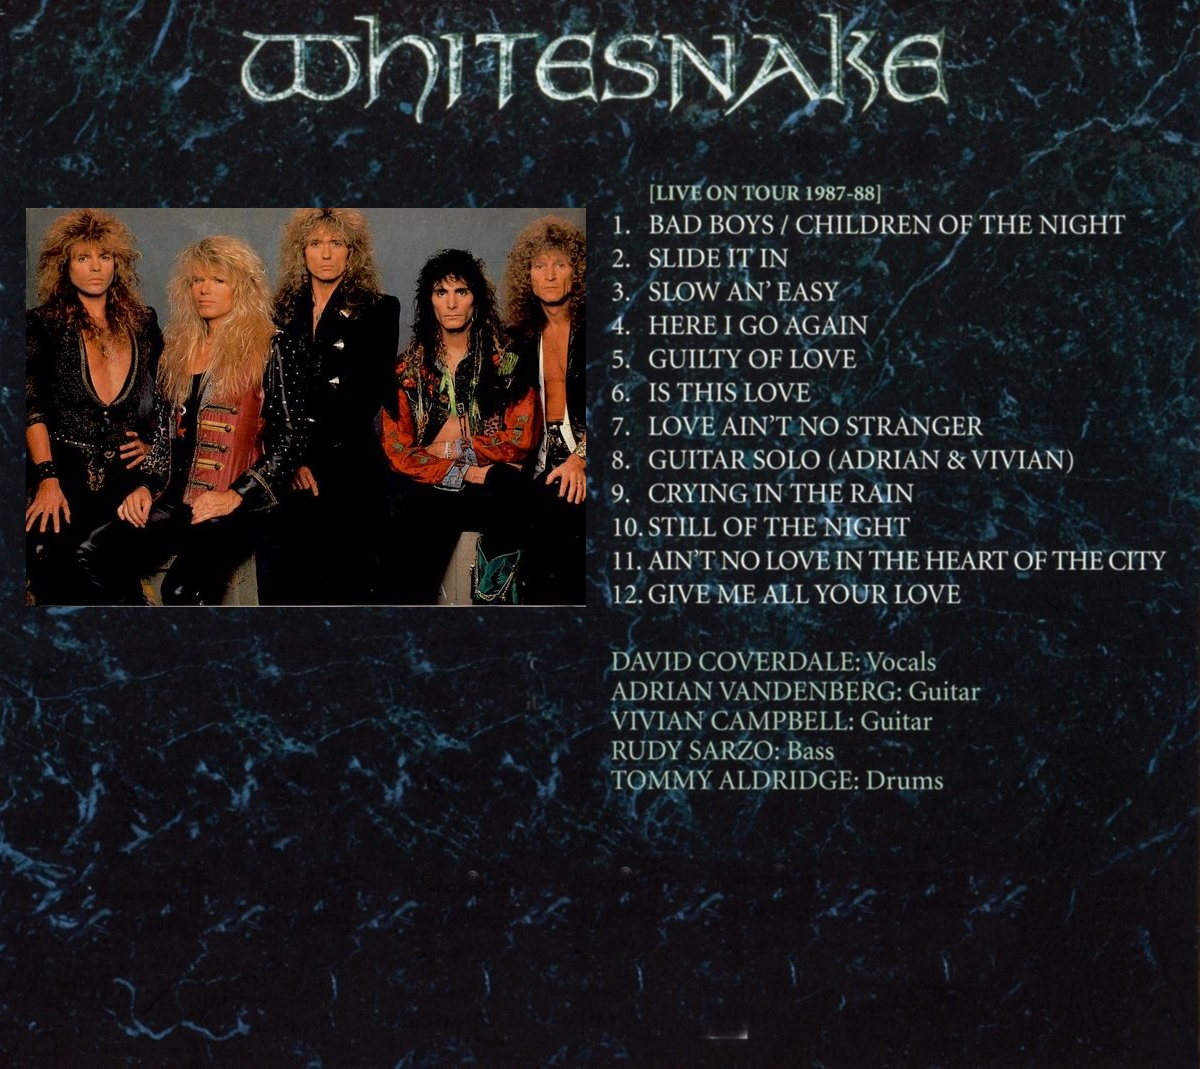 whitesnake 1987 tour